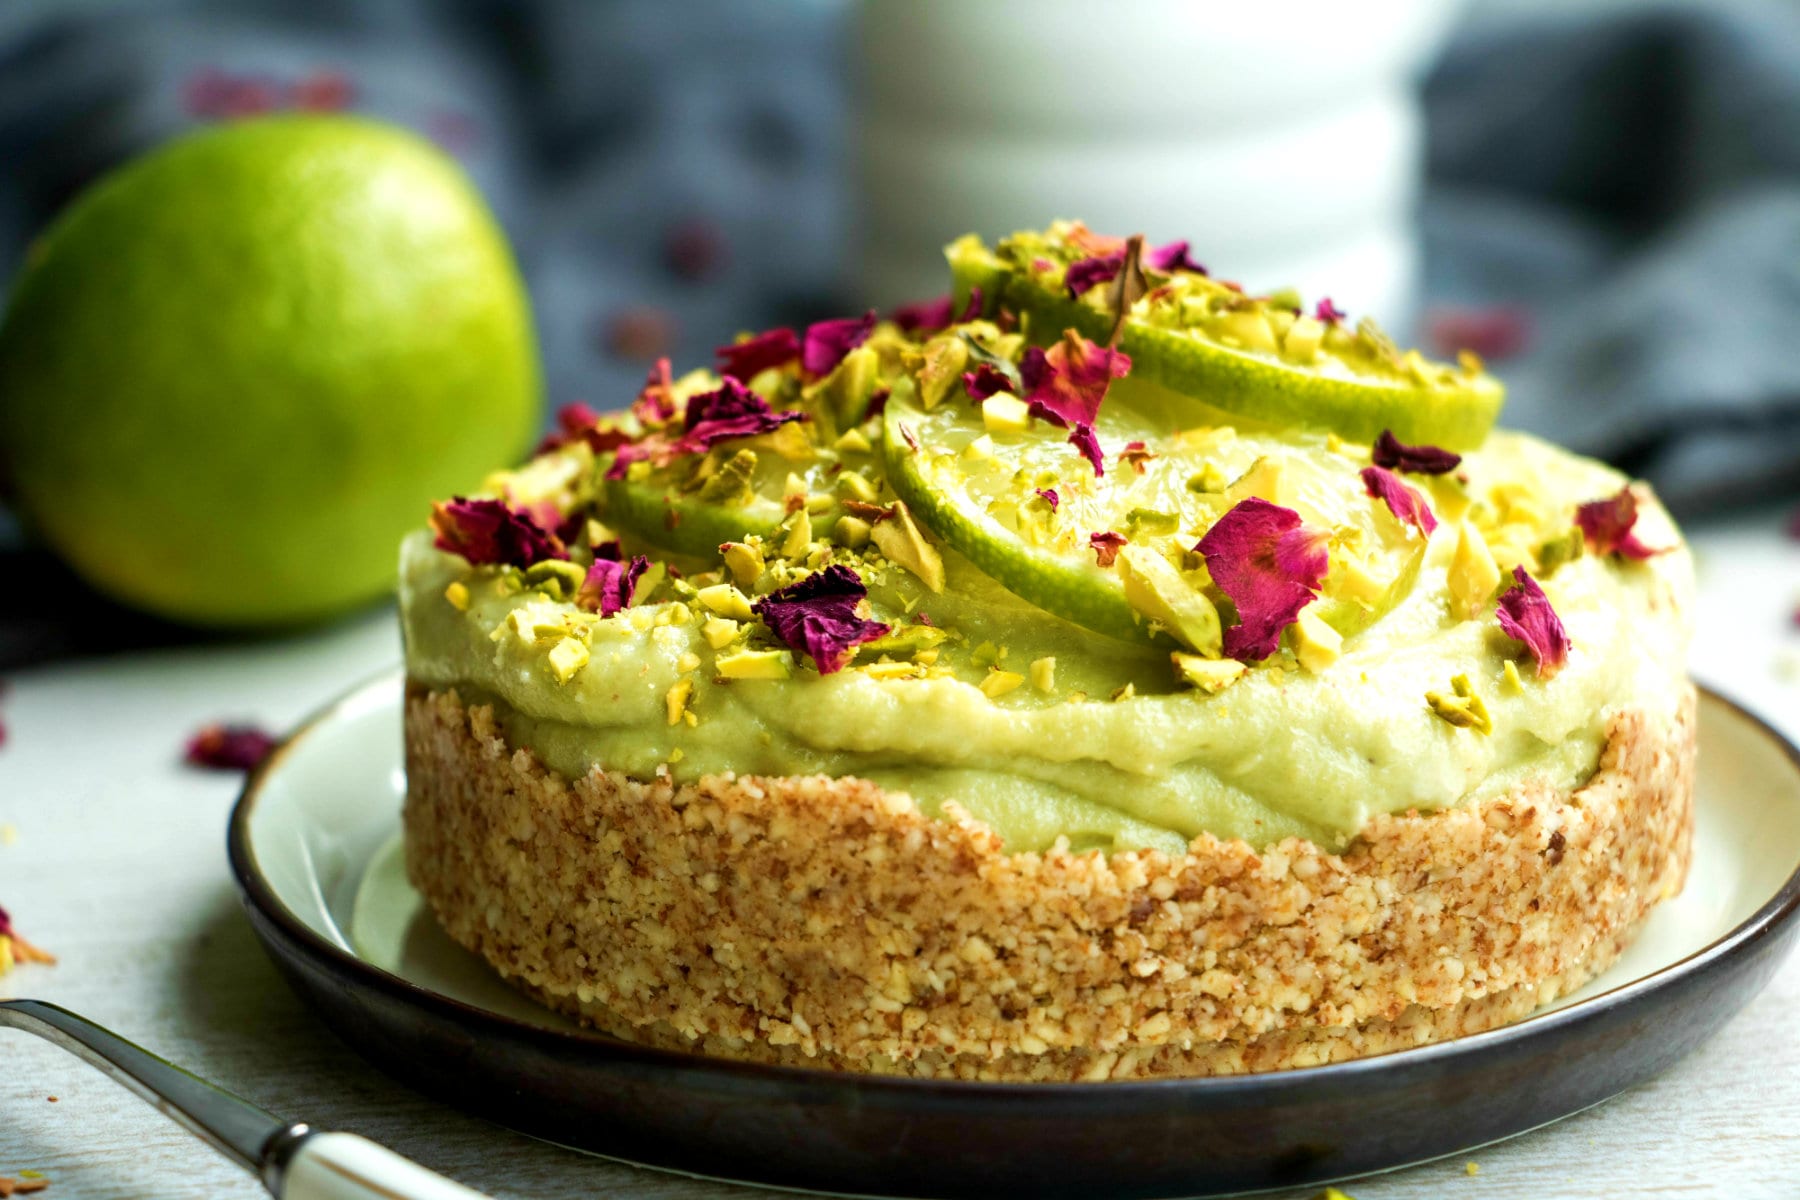 Avocado-Limoen Cheesecake | No-Bake Vegan Cheesecake Recept